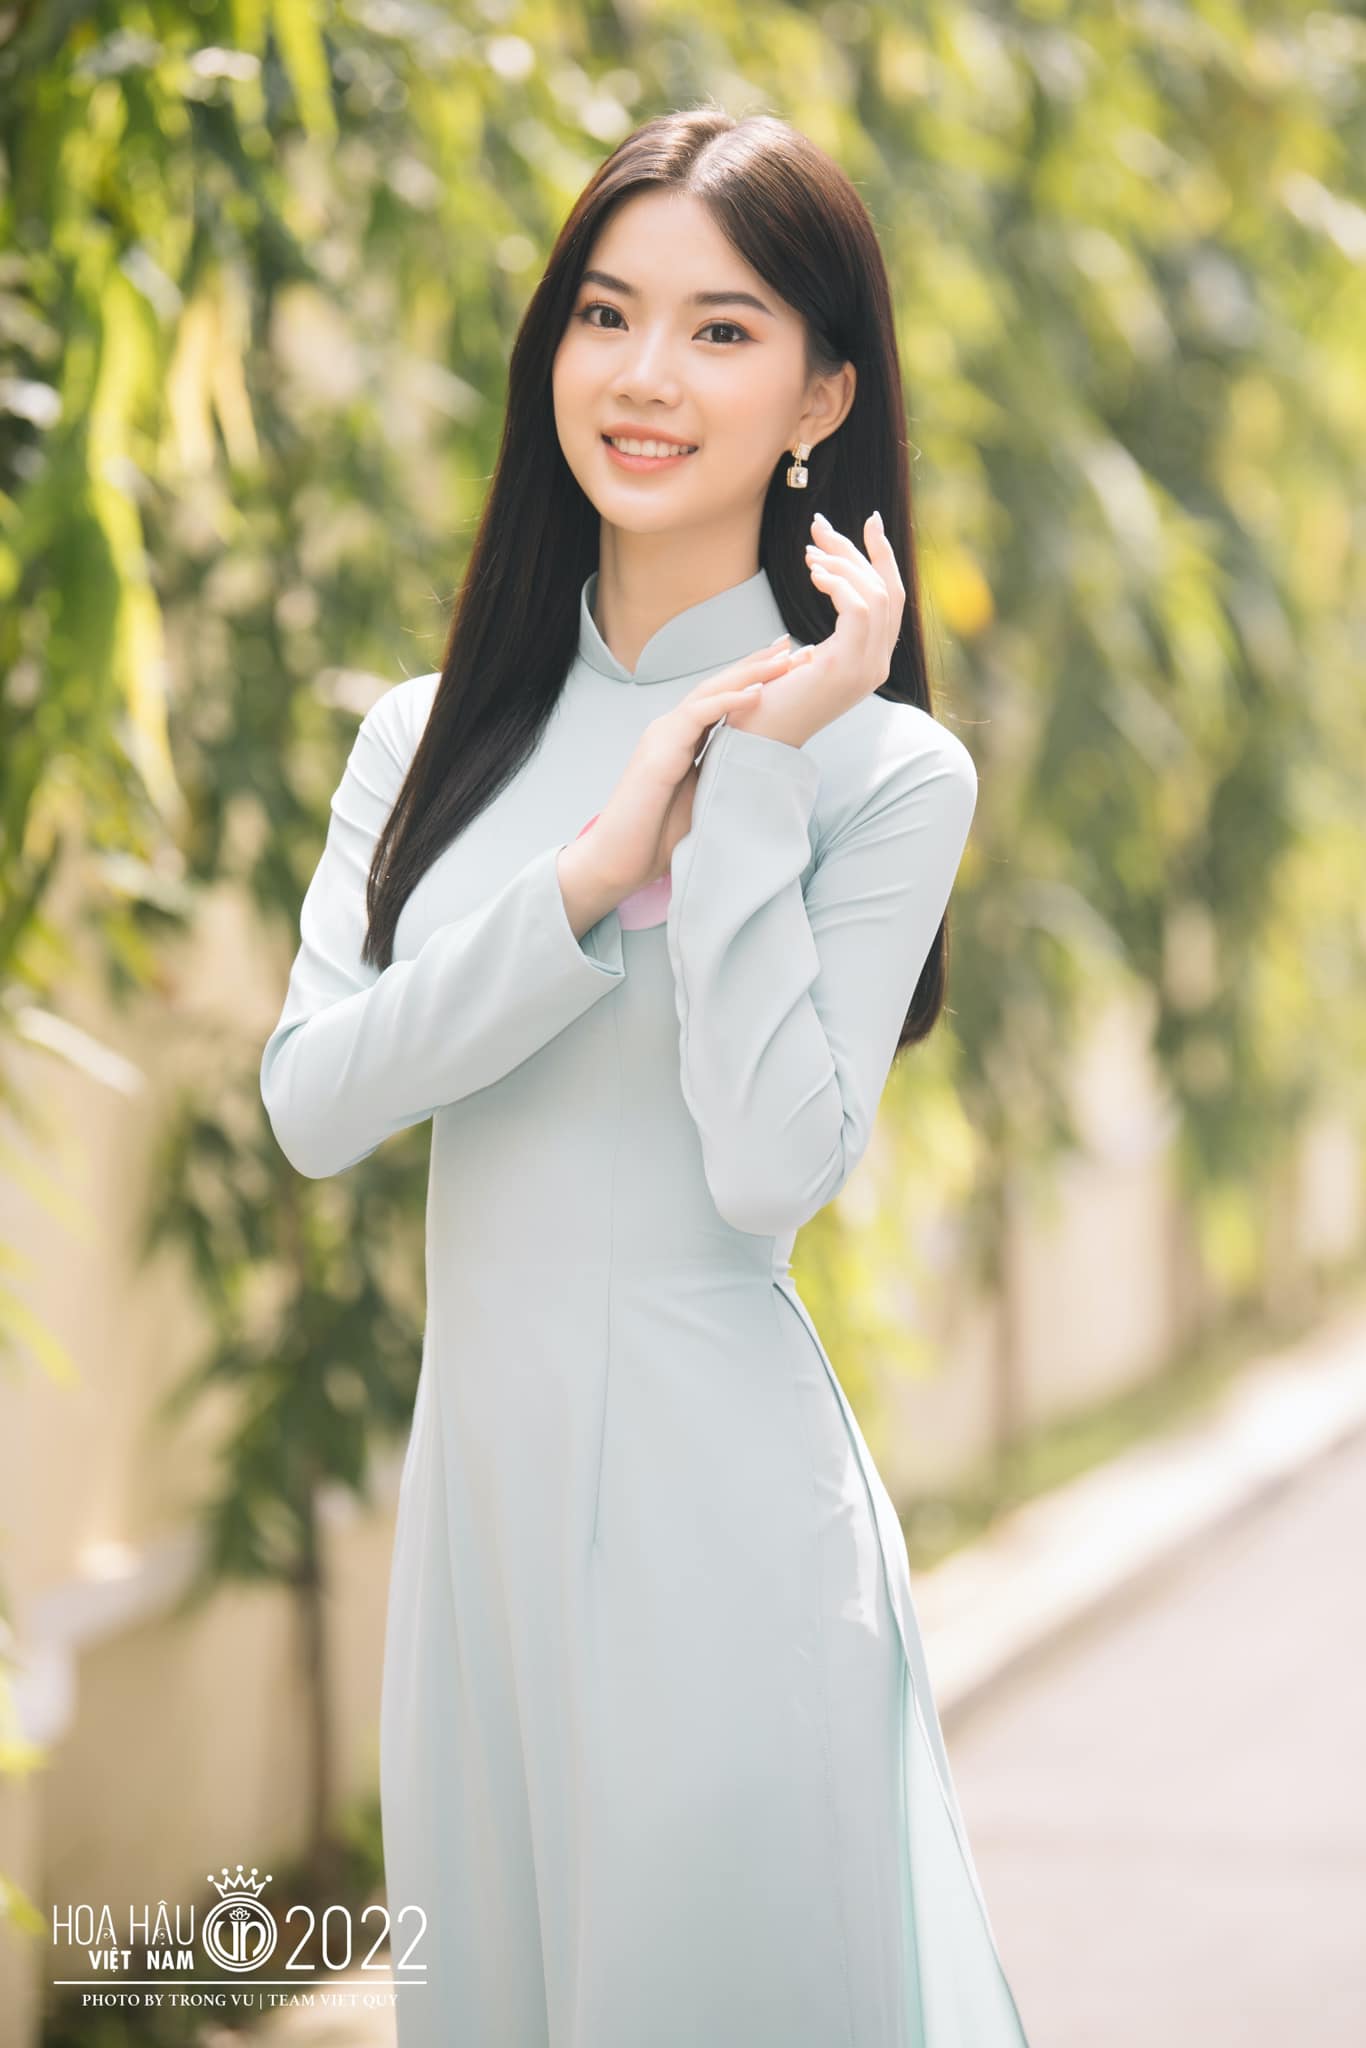 Điểm danh người đẹp sở hữu 'profile khủng' tại Hoa hậu Việt Nam 2022: Bé Quyên 'gây sốt' mạng xã hội vẫn phải dè chừng - Ảnh 4.